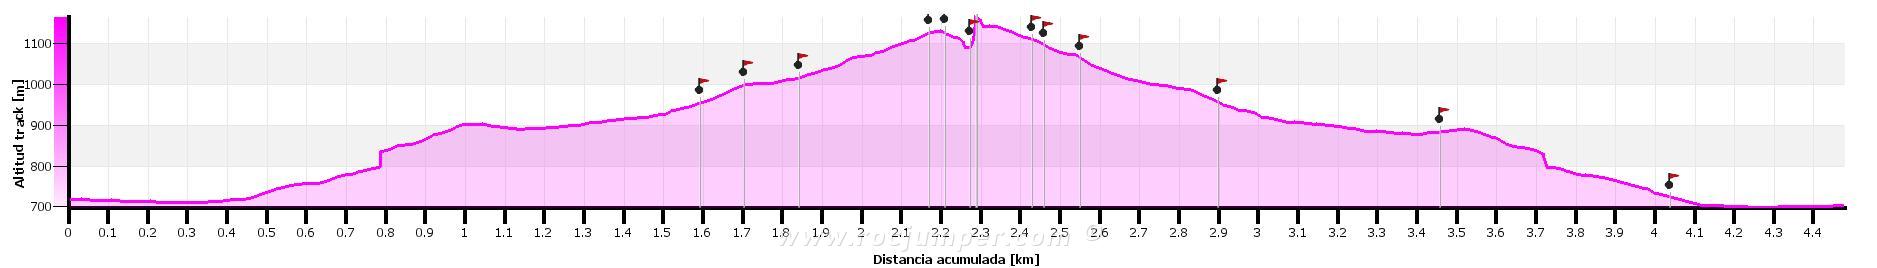 Altimetría - Vía Acromion - Magdalena Superior - Montserrat - RocJumper